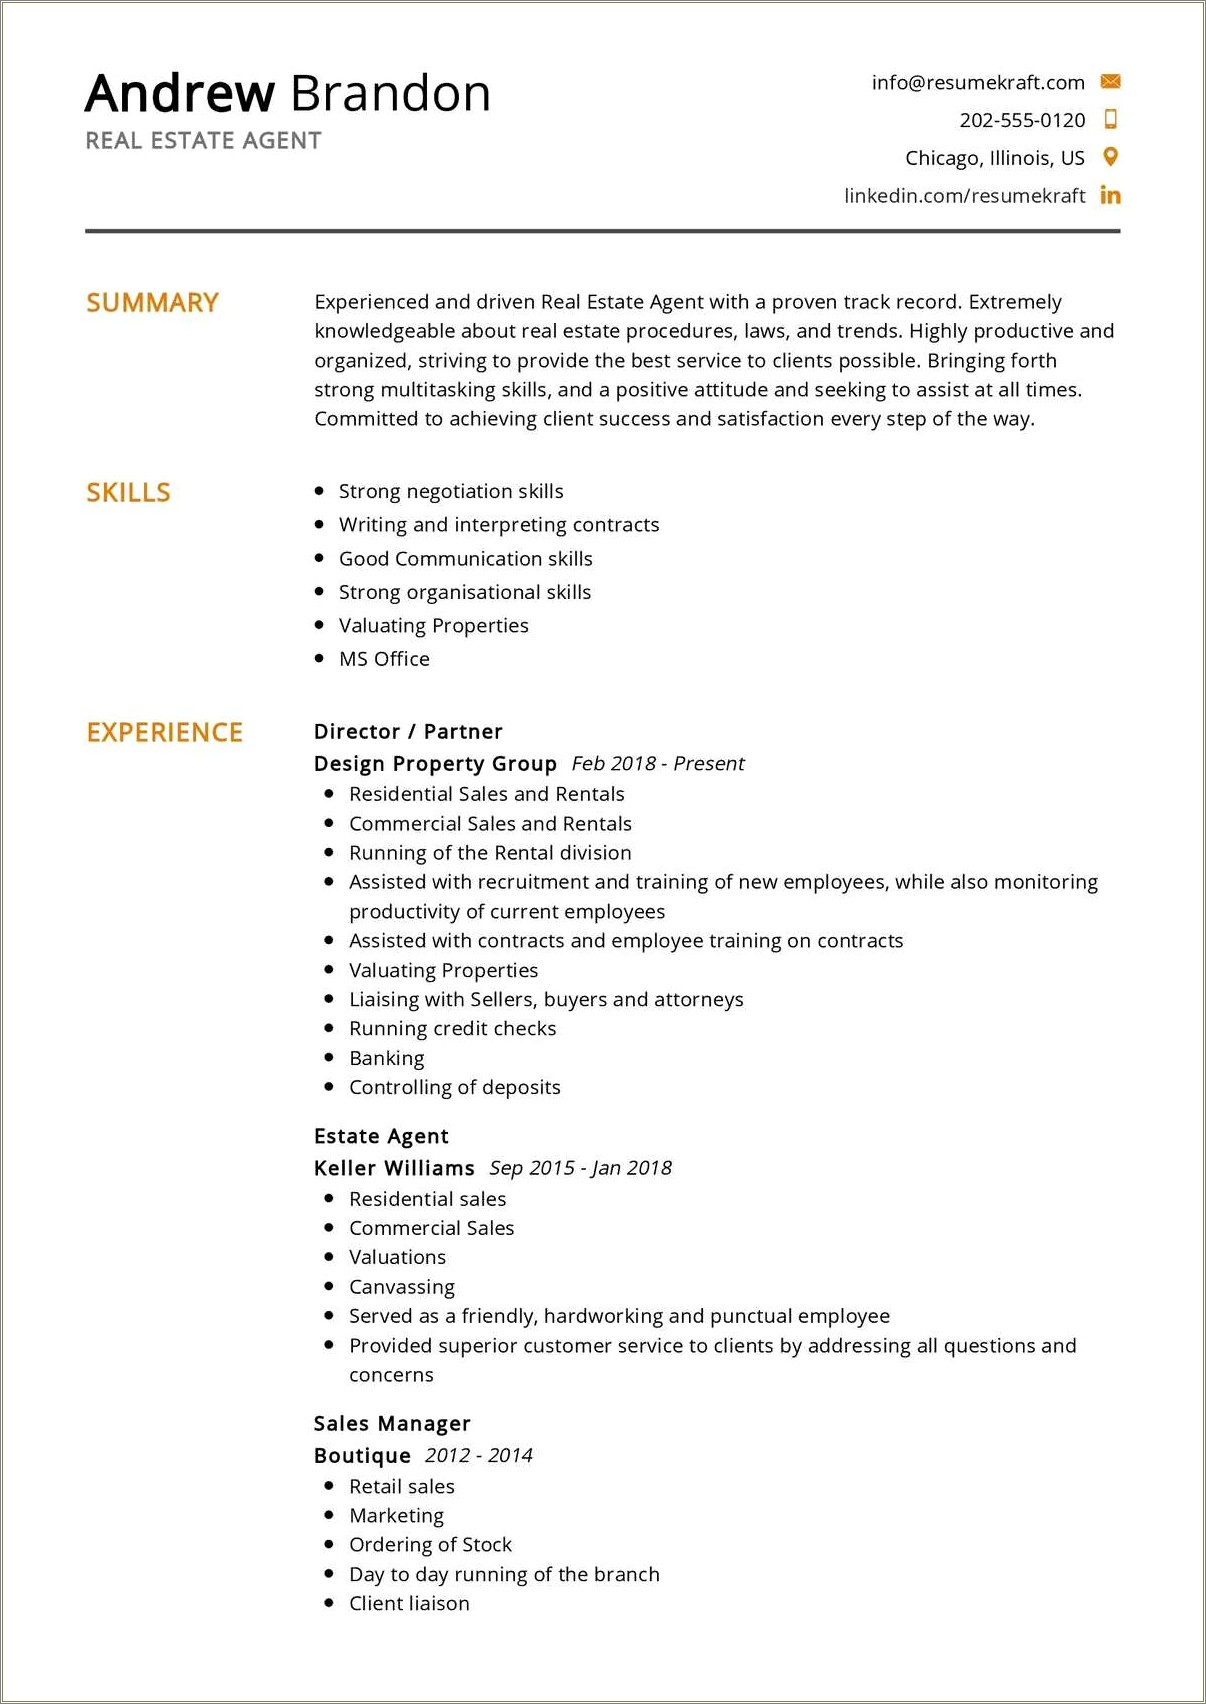 Commercial Real Estate Job Description For Resume